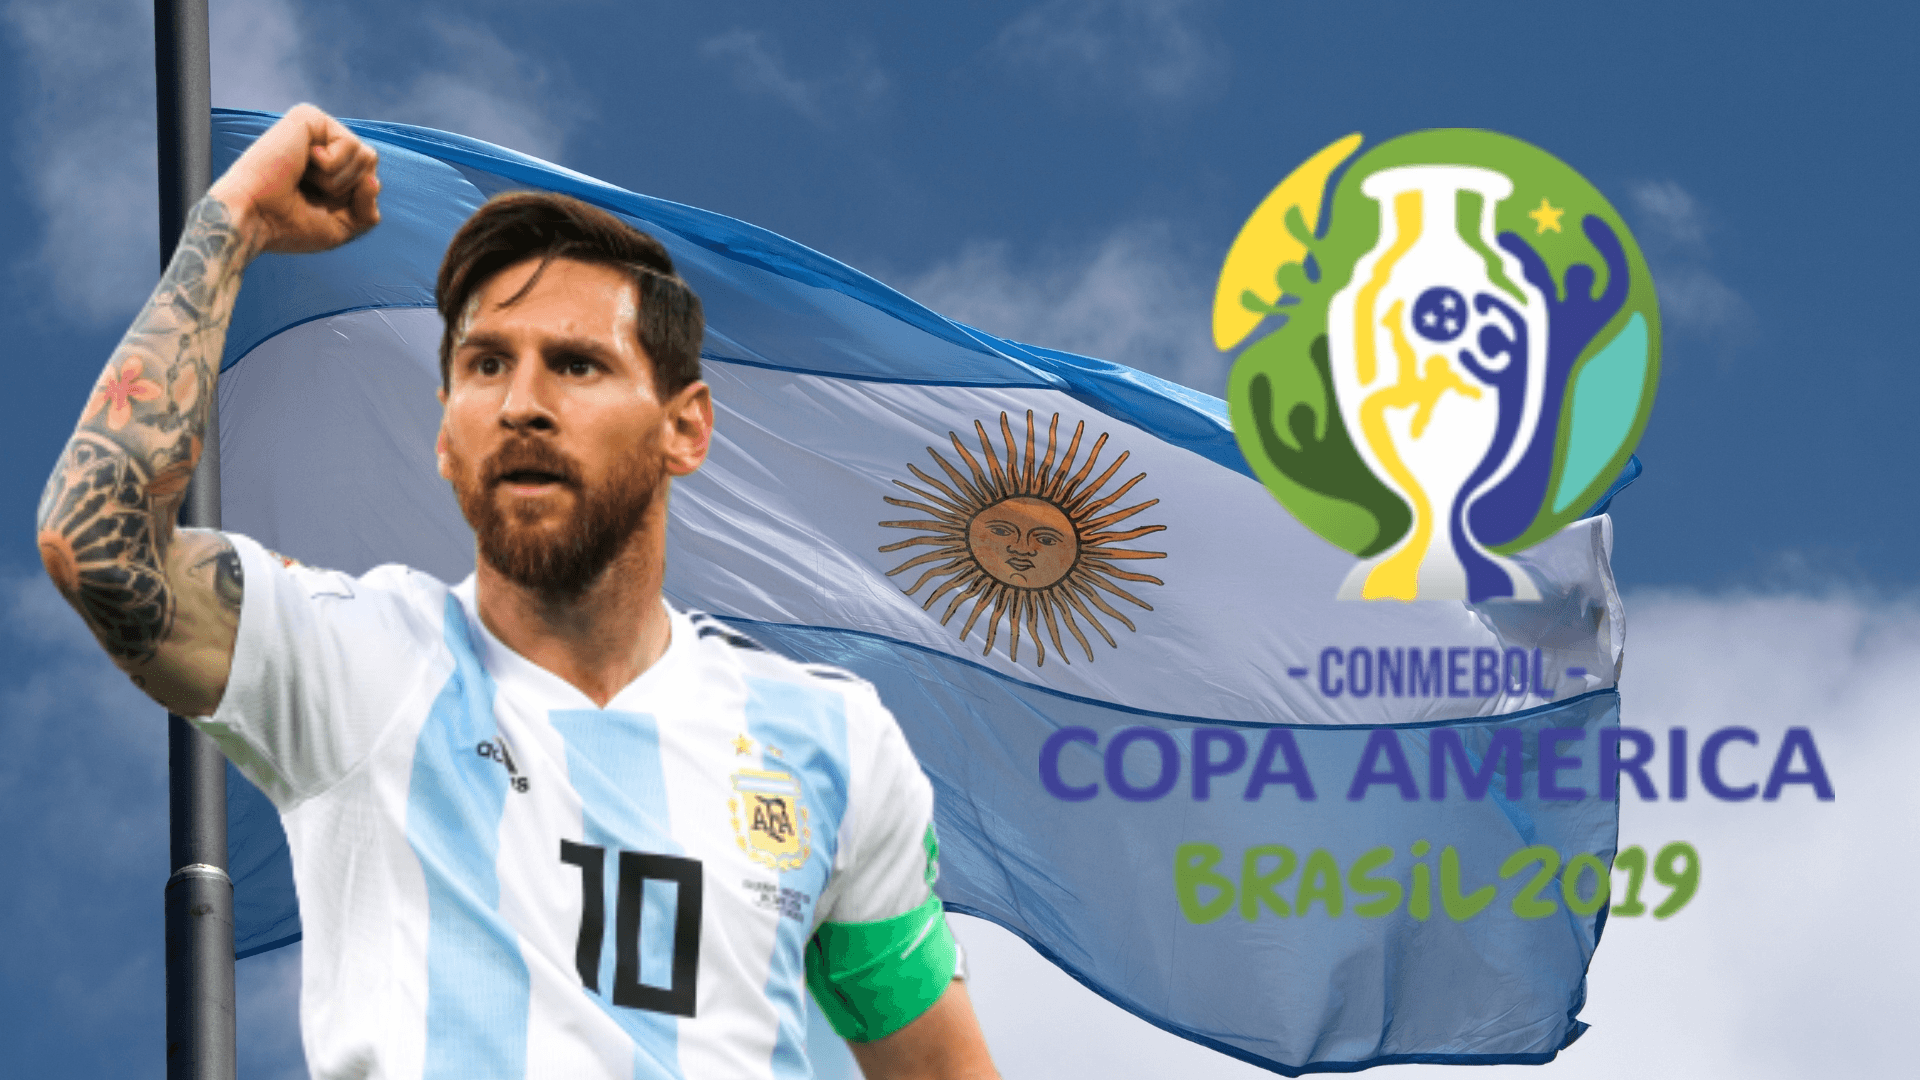 Copa América 2019 Wallpapers - Wallpaper Cave